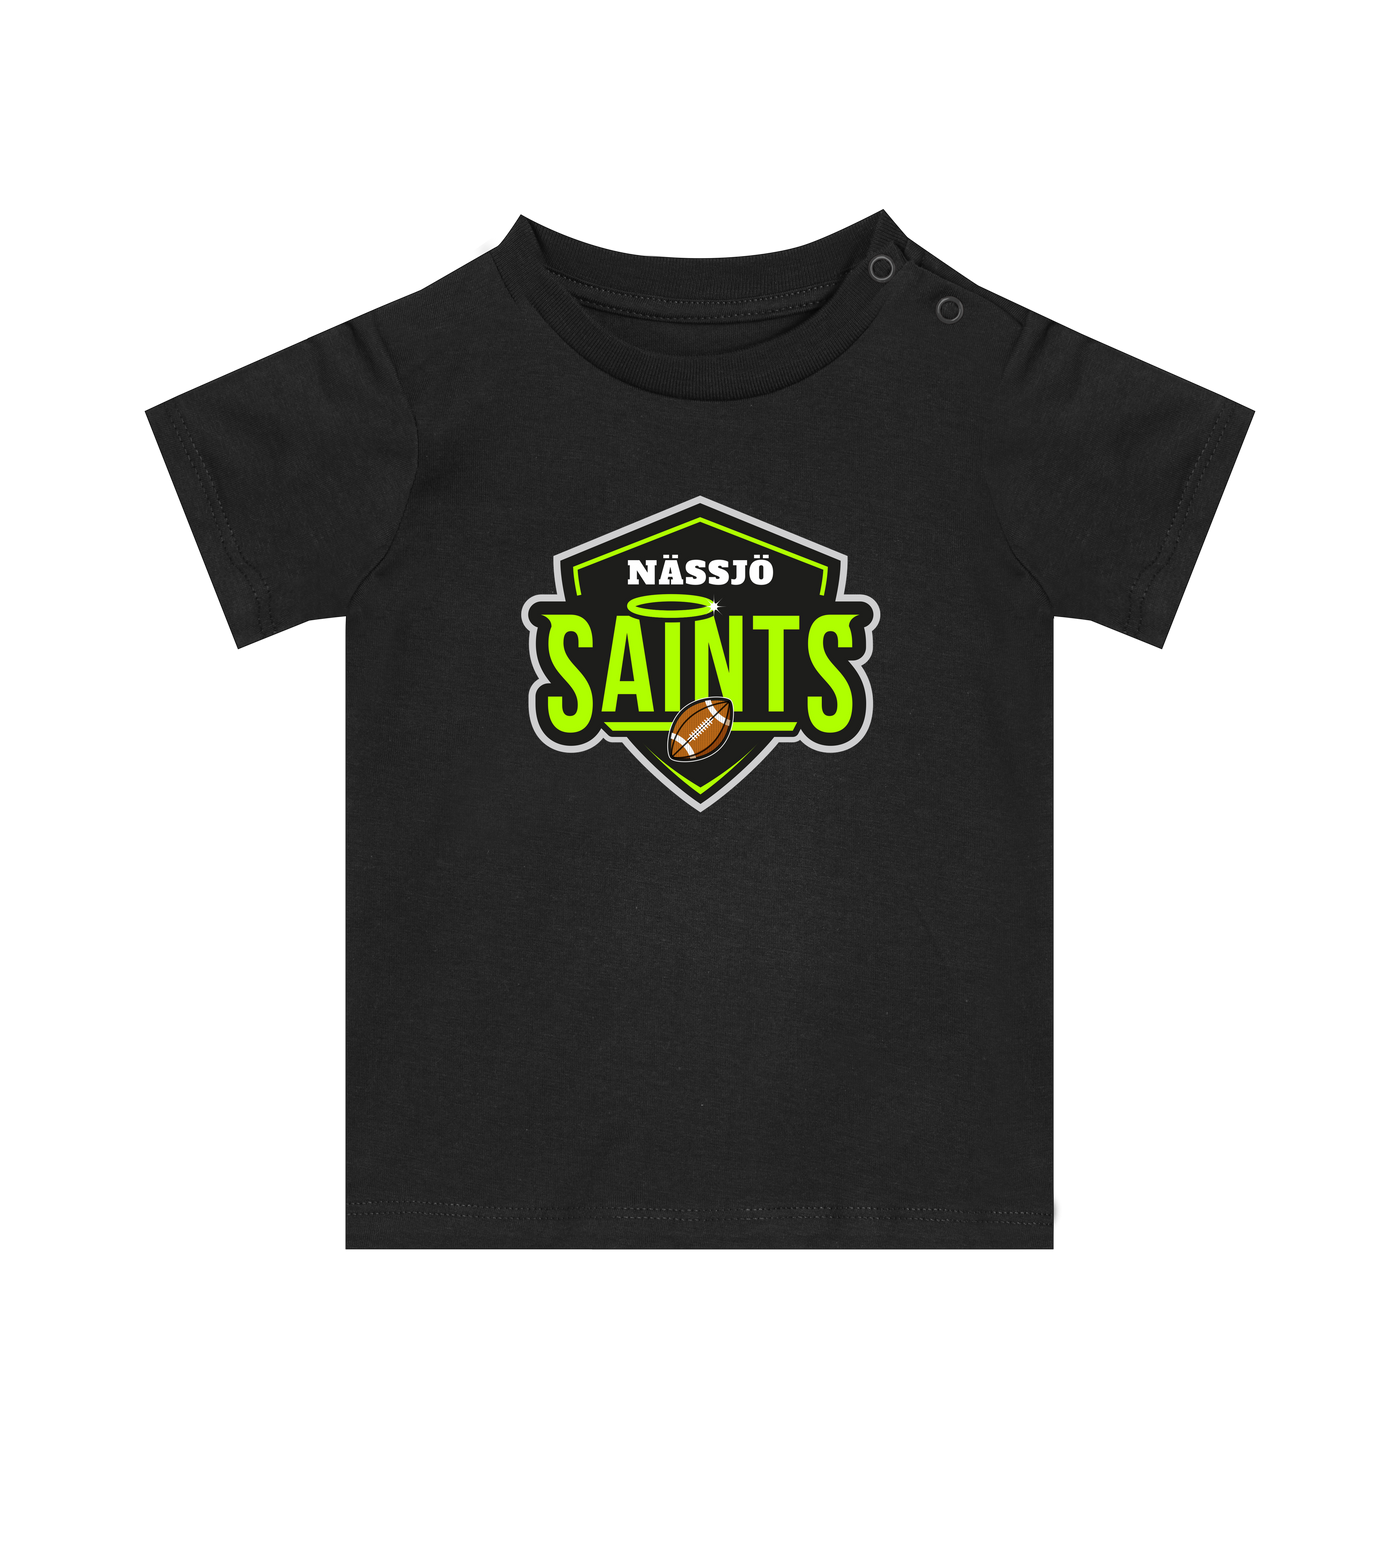 Nässjö Saints Baby Tee - Premium t-shirt from REYRR STUDIO - Shop now at Reyrr Athletics